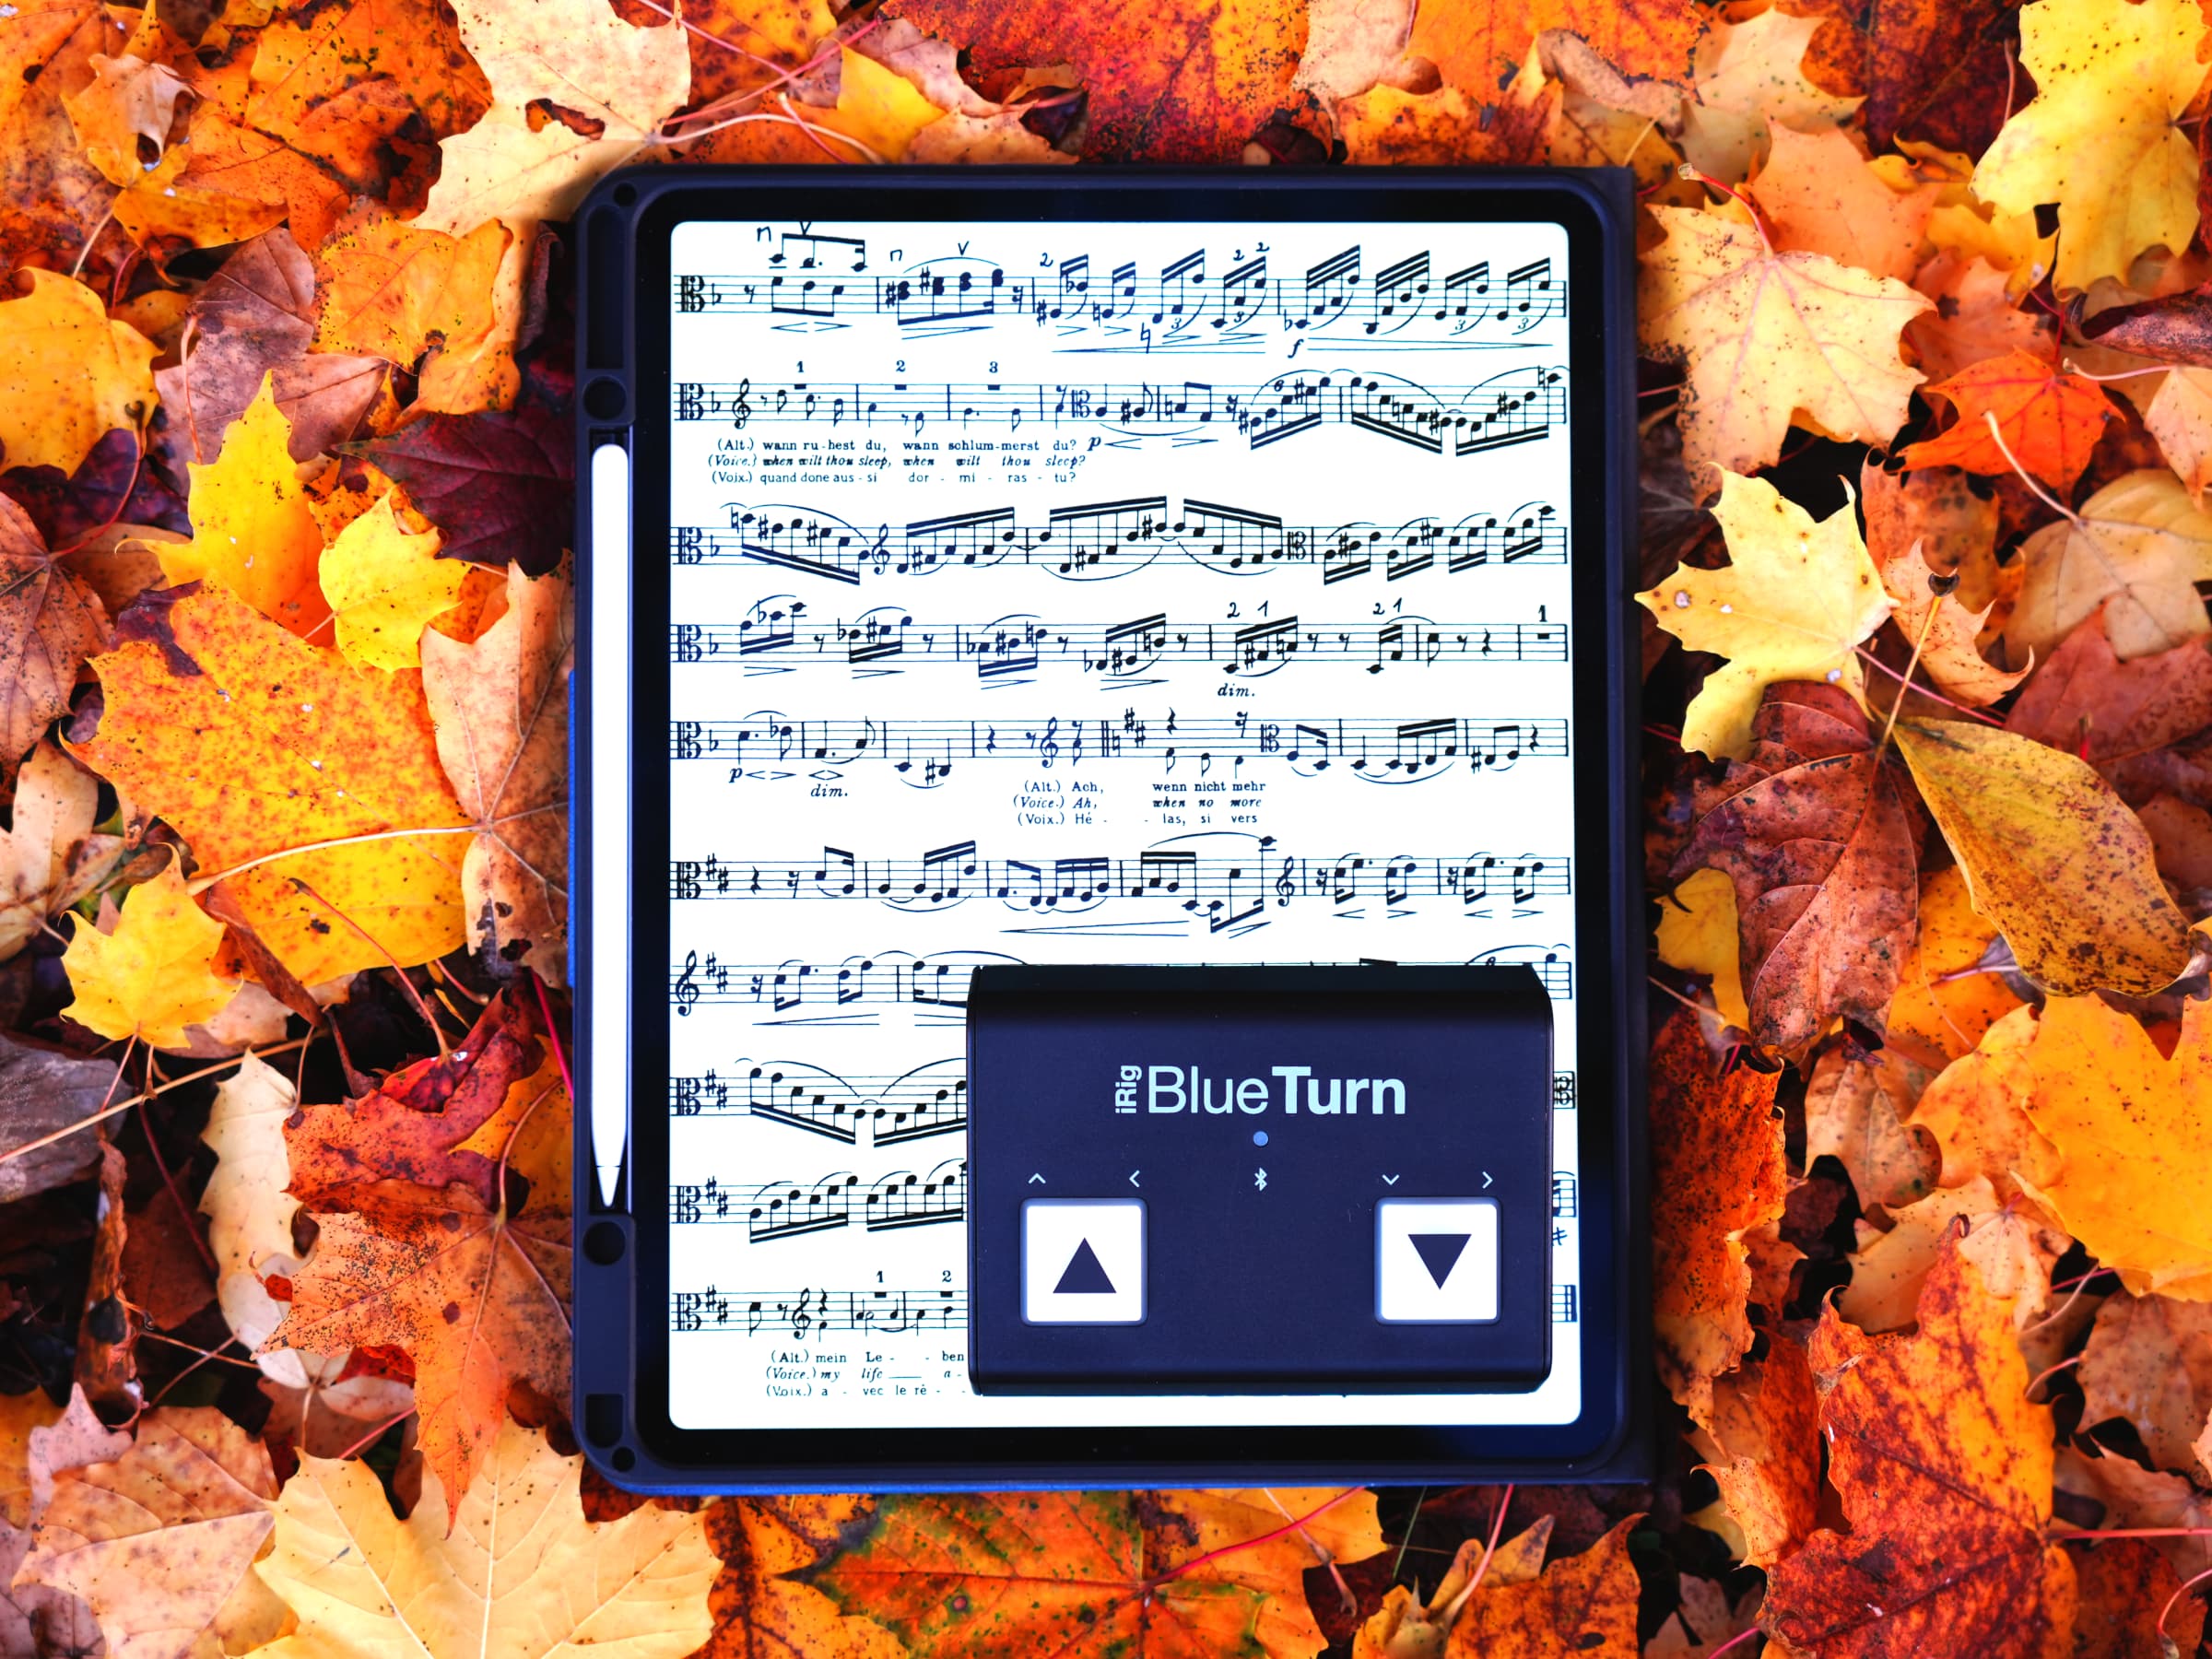 Tableta iPad con partituras de viola, Apple Pencil y un pedal para pasar páginas (iRig BlueTurn)